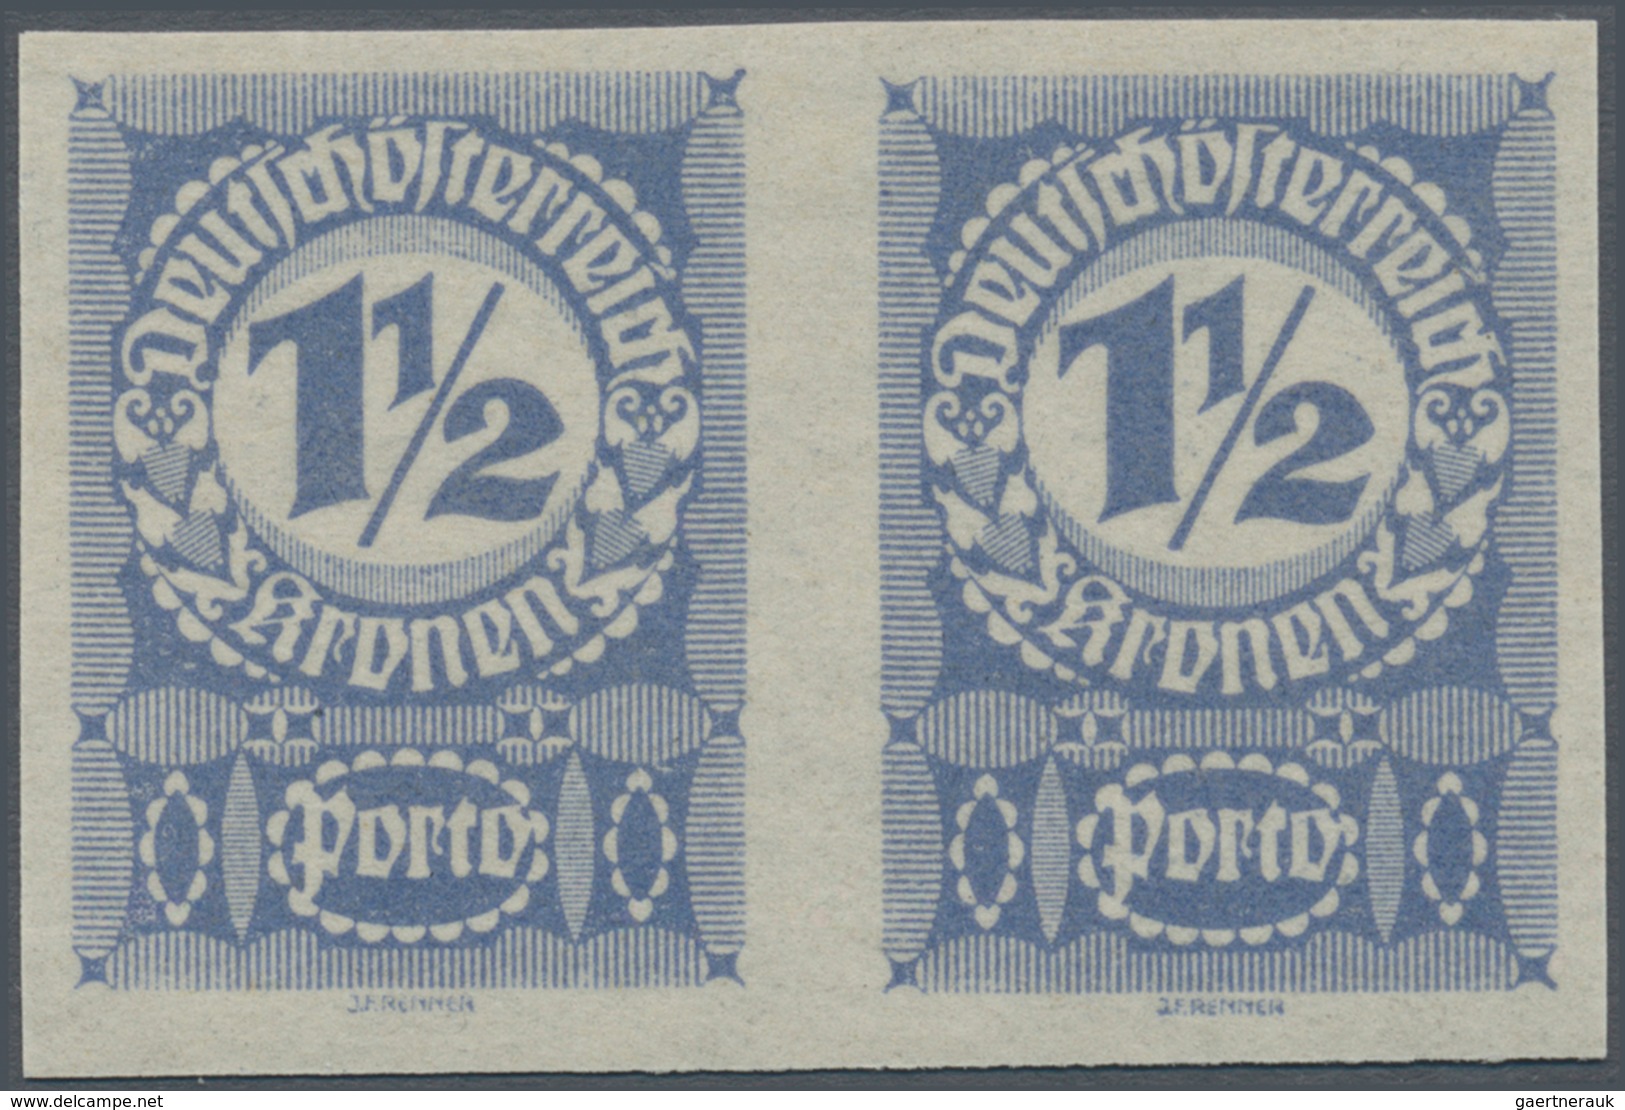 Österreich - Portomarken: 1920/1921, Ziffern, 1 Kr. Bis 20 Kr., Neun Werte In Ungezähnten Waagerecht - Postage Due